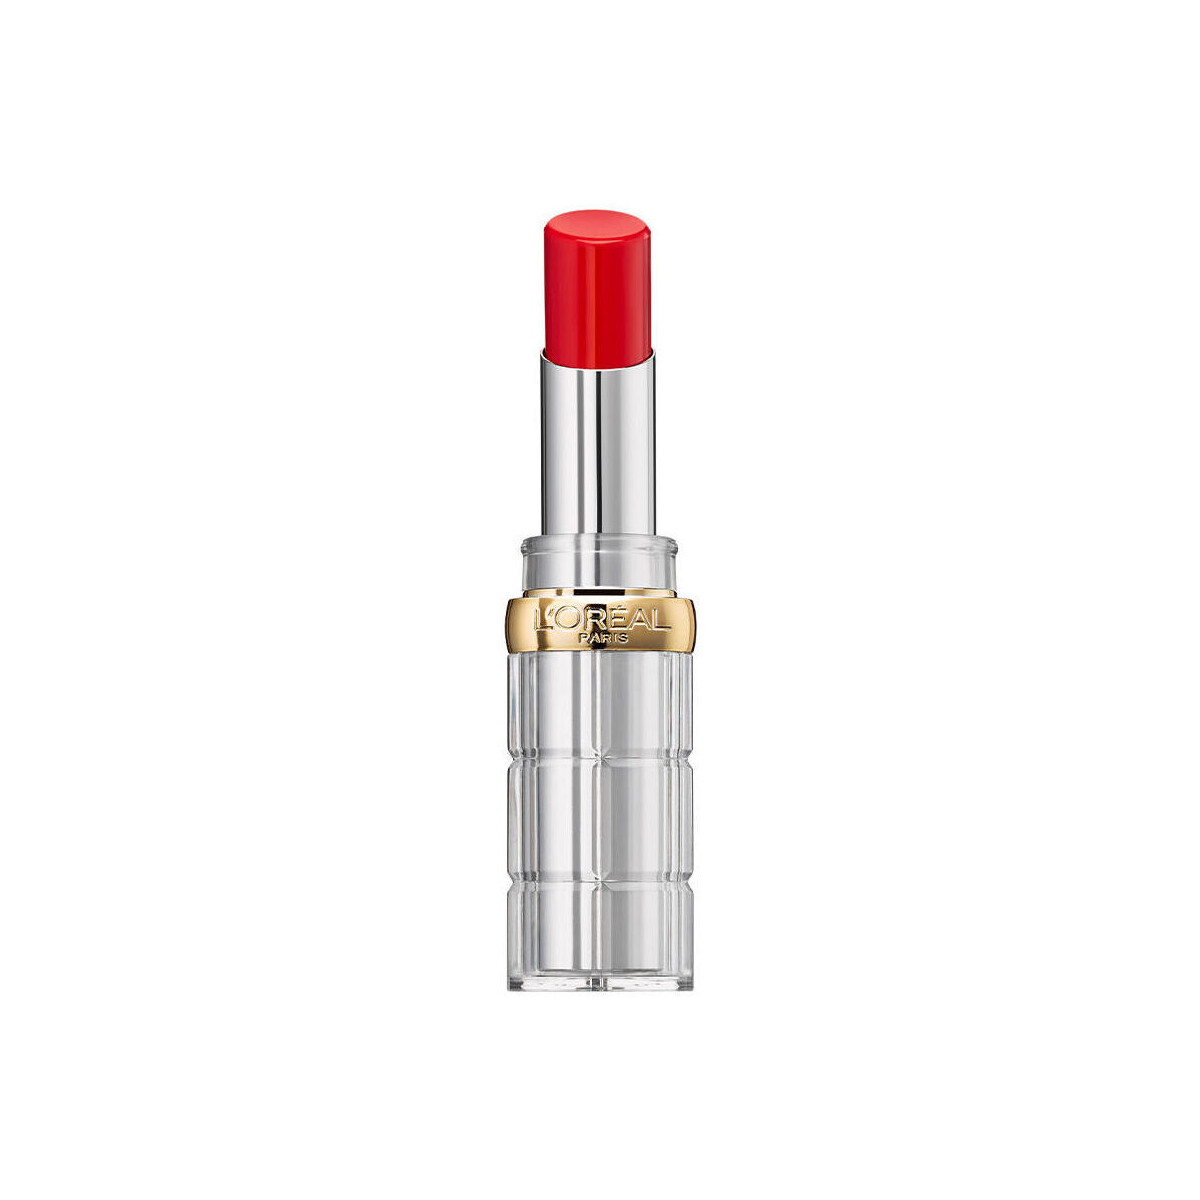 Beauté Femme Soins & bases lèvres L'oréal Color Riche Shine Lips 352-shine Addcition 